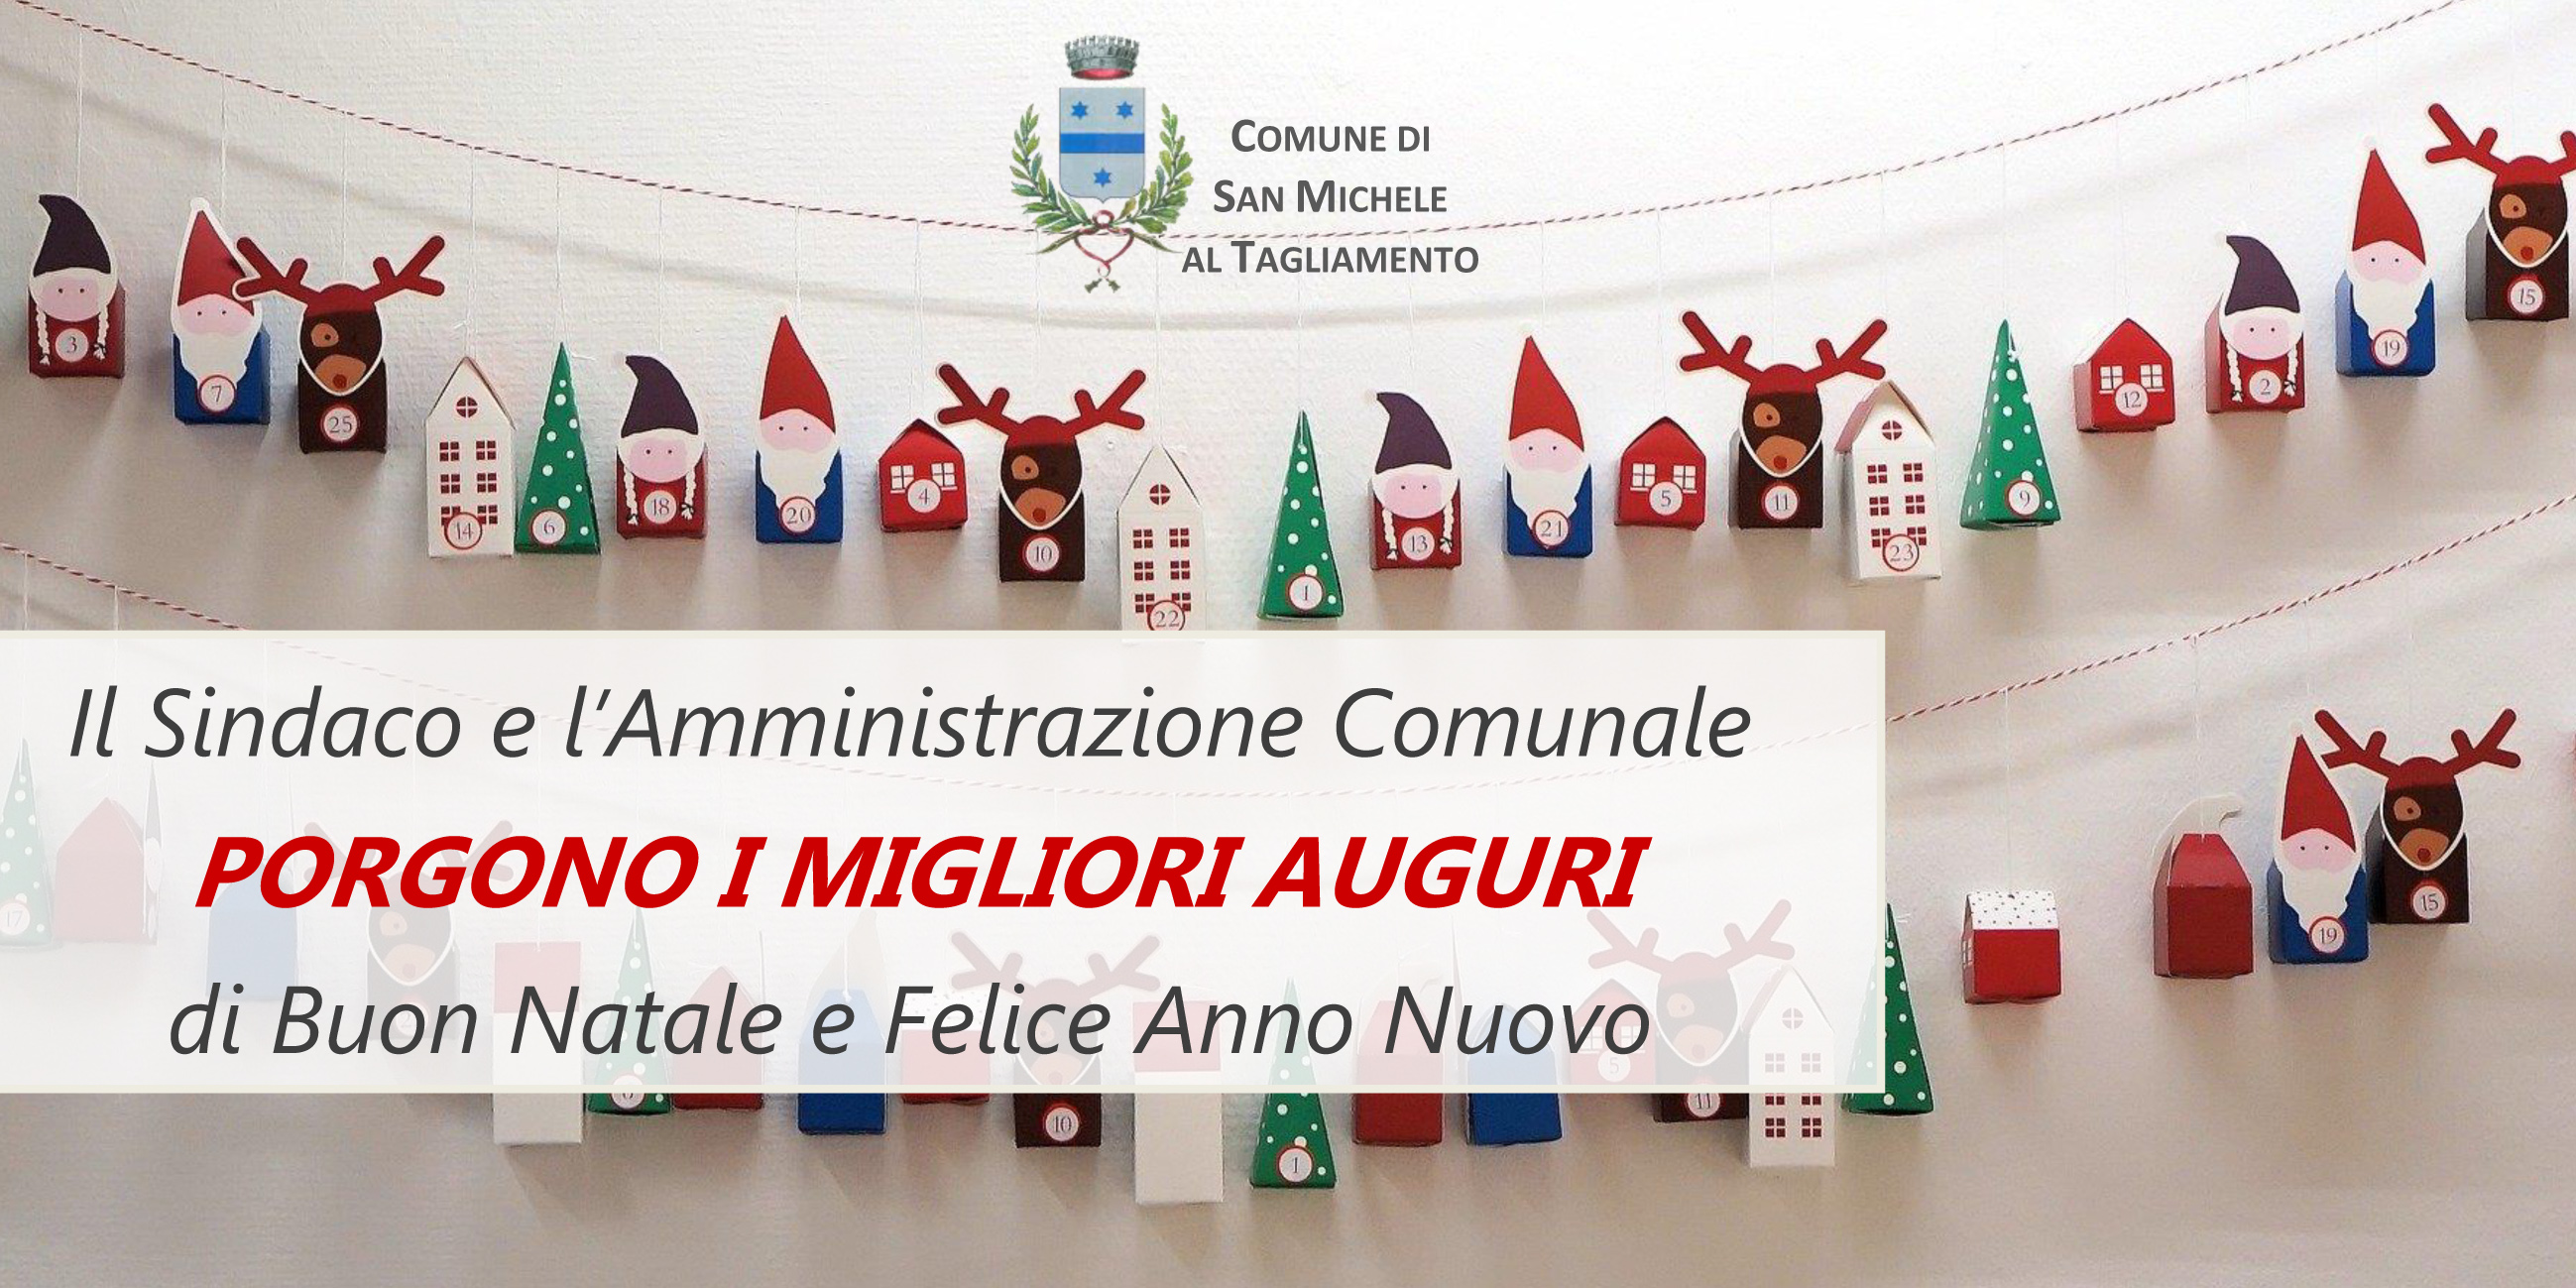 Buon Natale Albanese.Auguri Di Buone Feste In Tutte Le Lingue Del Mondo Comune Di San Michele Al Tagliamento